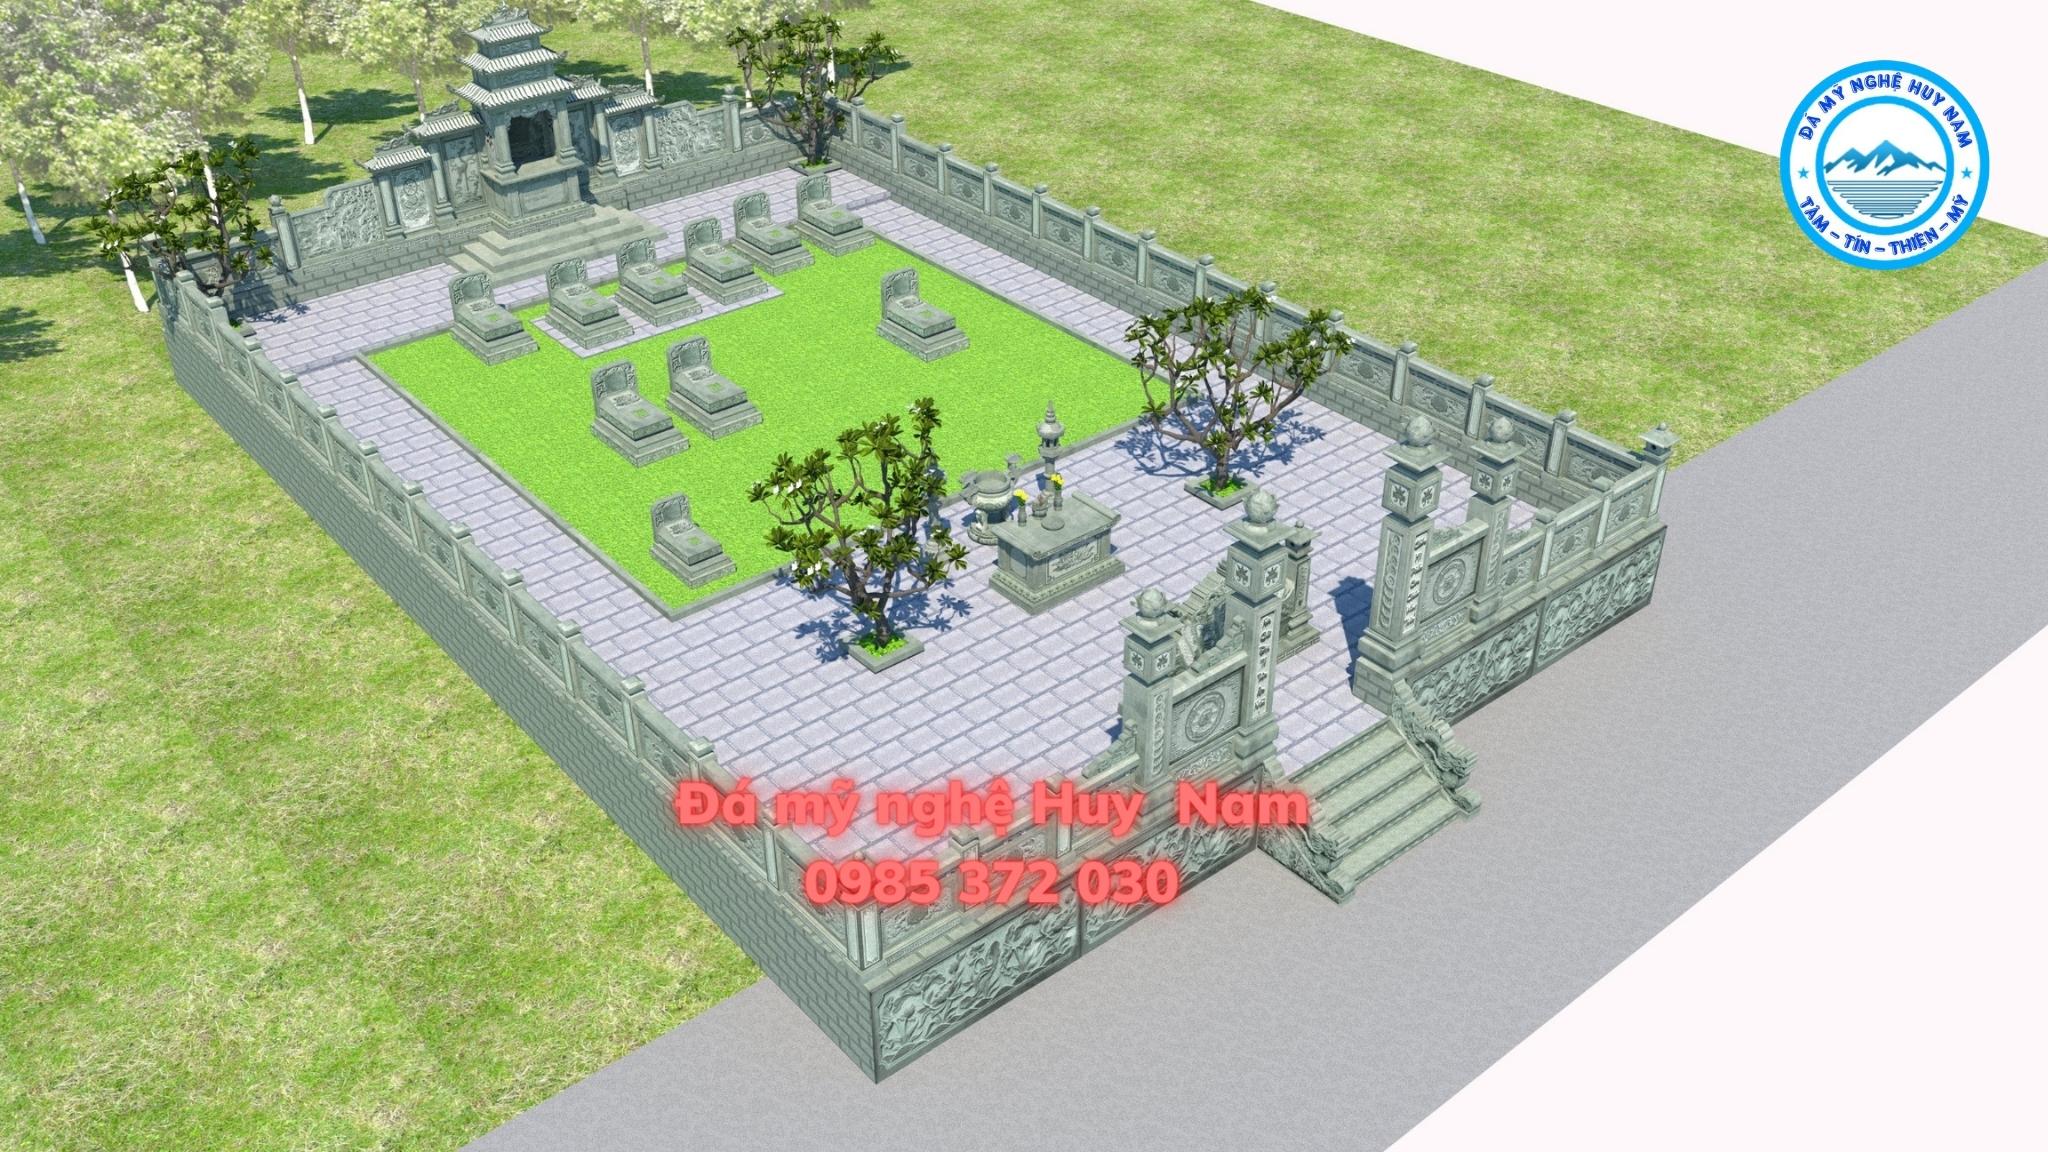 Tạo ra những khu lăng mộ đẹp đẽ và tinh tế với phối cảnh 3D chân thực. Hình ảnh của chúng tôi sẽ giúp bạn thấy rõ từng chi tiết thiết kế một cách sinh động, giúp bạn có quyết định tốt nhất cho bất kỳ khu lăng mộ nào mà bạn đang lên kế hoạch.